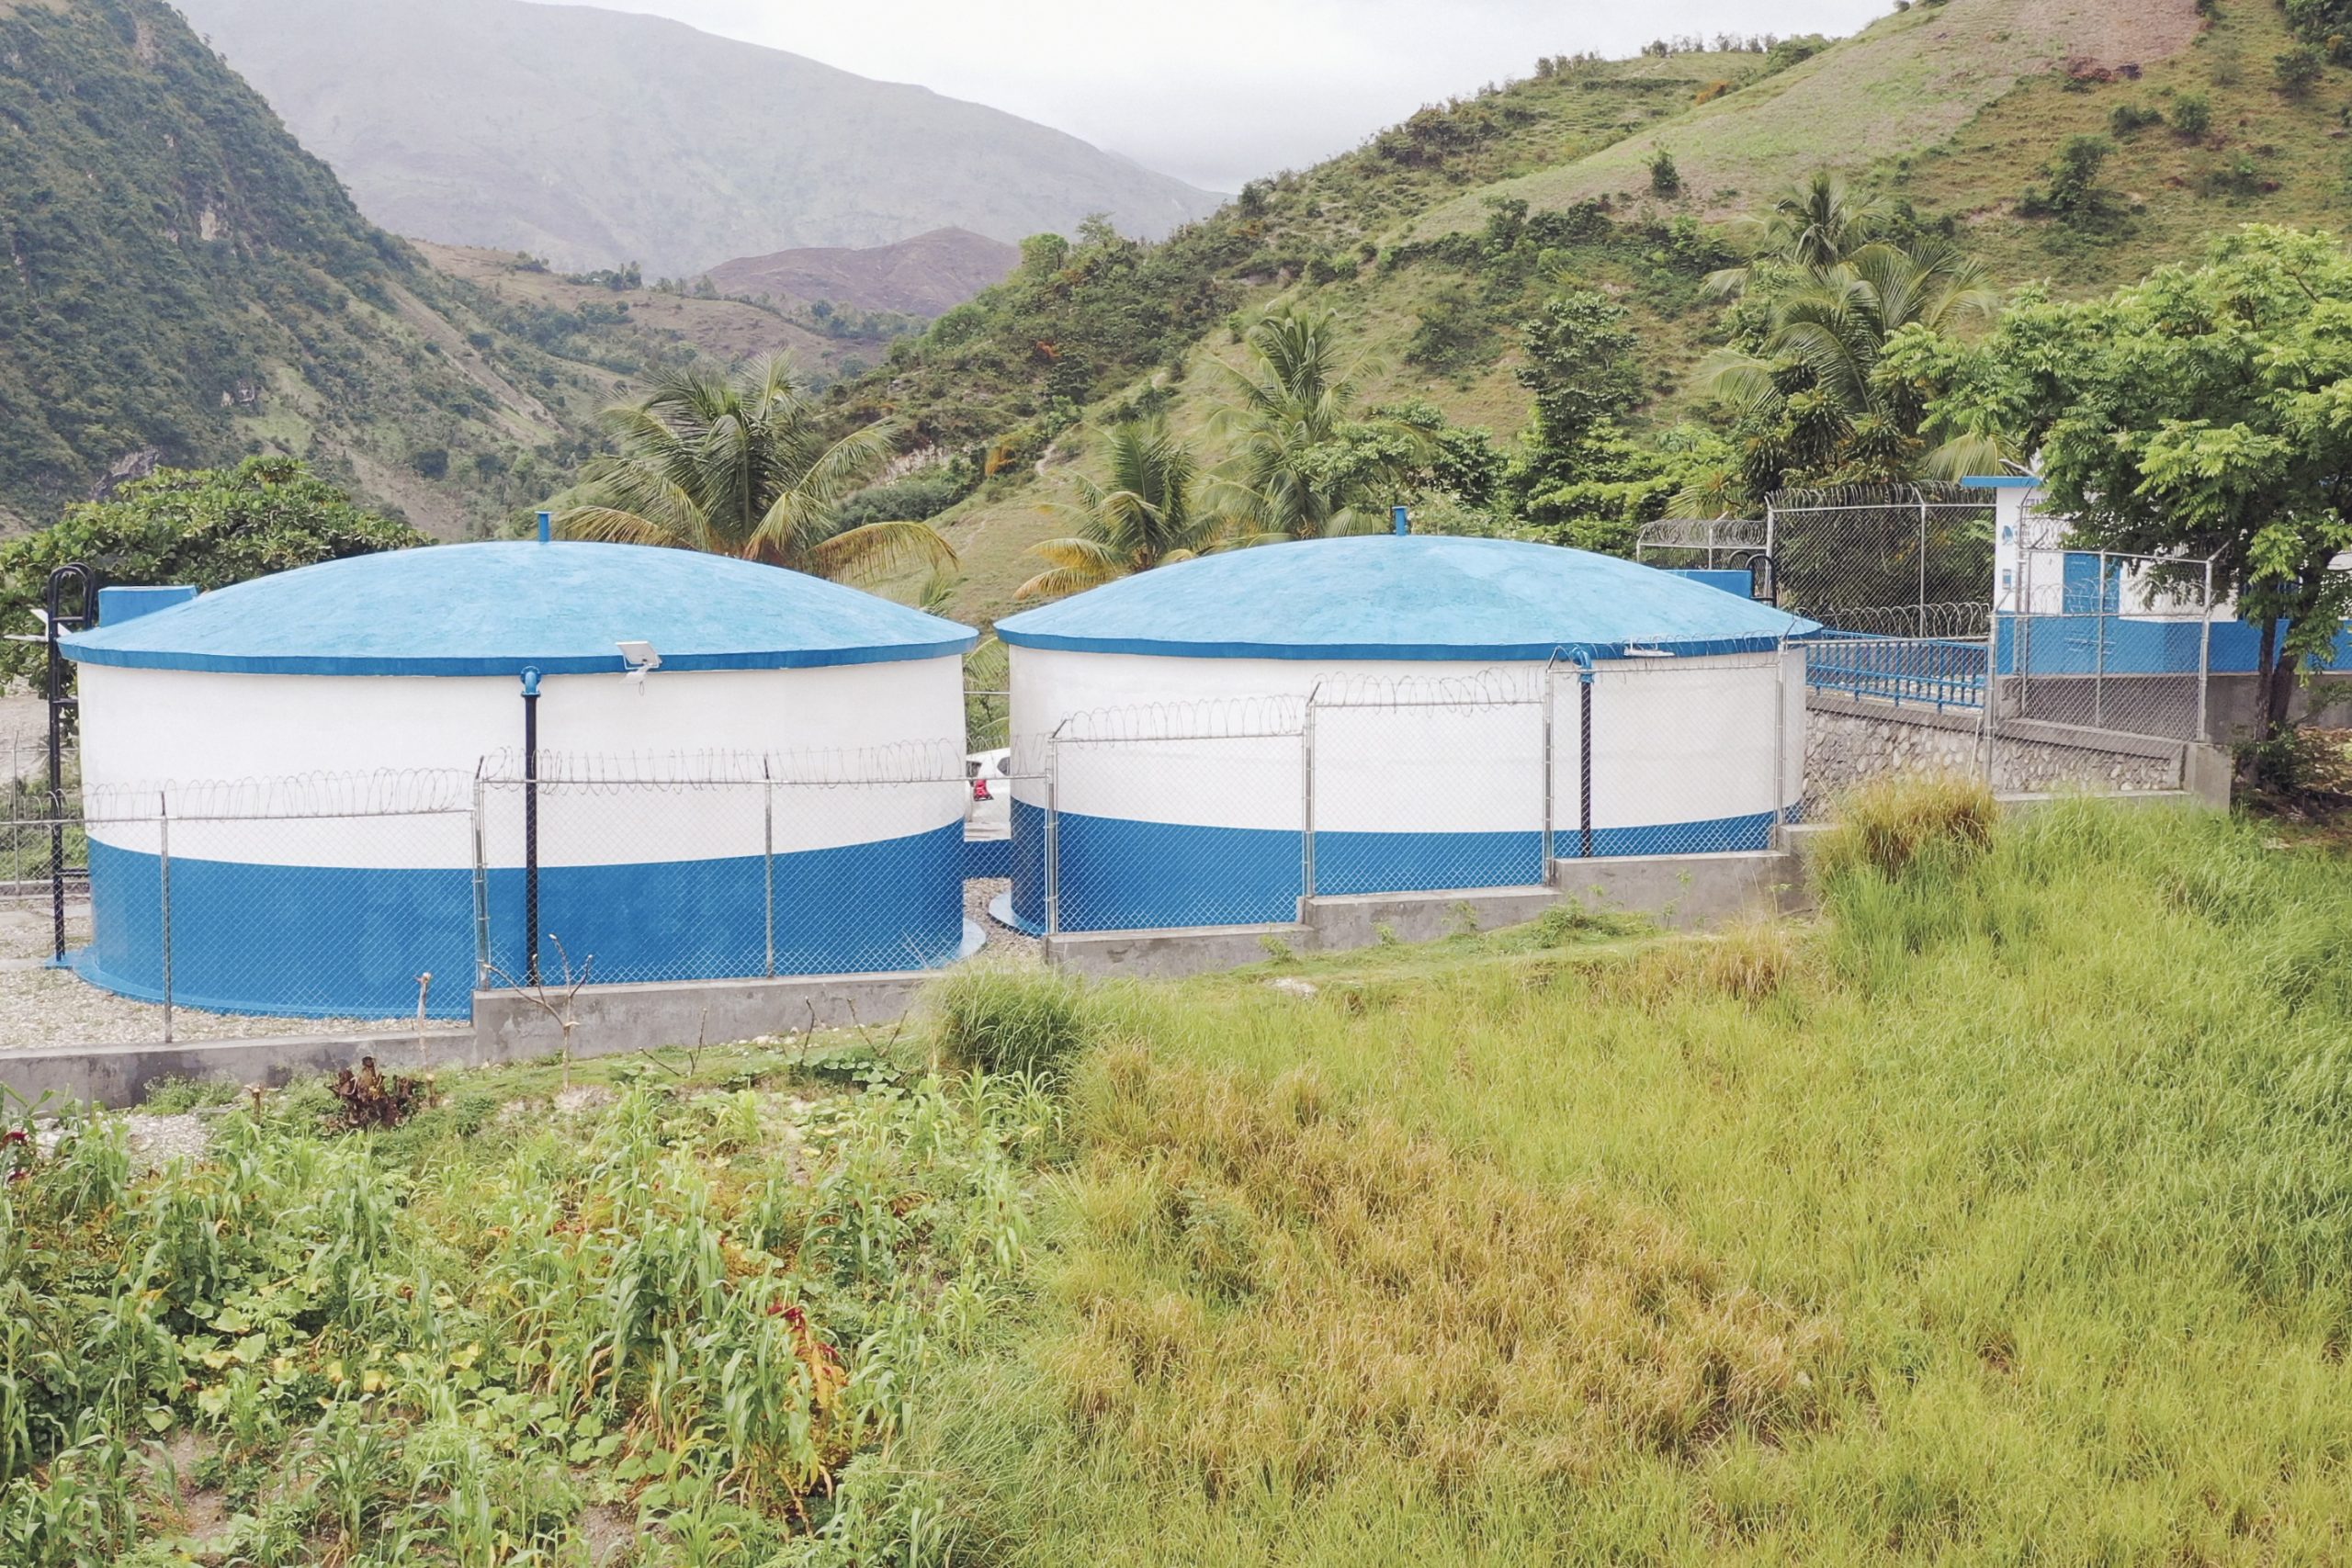 Communique de presse: La Banque mondiale approuve US$ 80 millions pour améliorer l'accès à l'eau et à l'assainissement résilient, durable et décentralisé dans les zones rurales d'Haïti